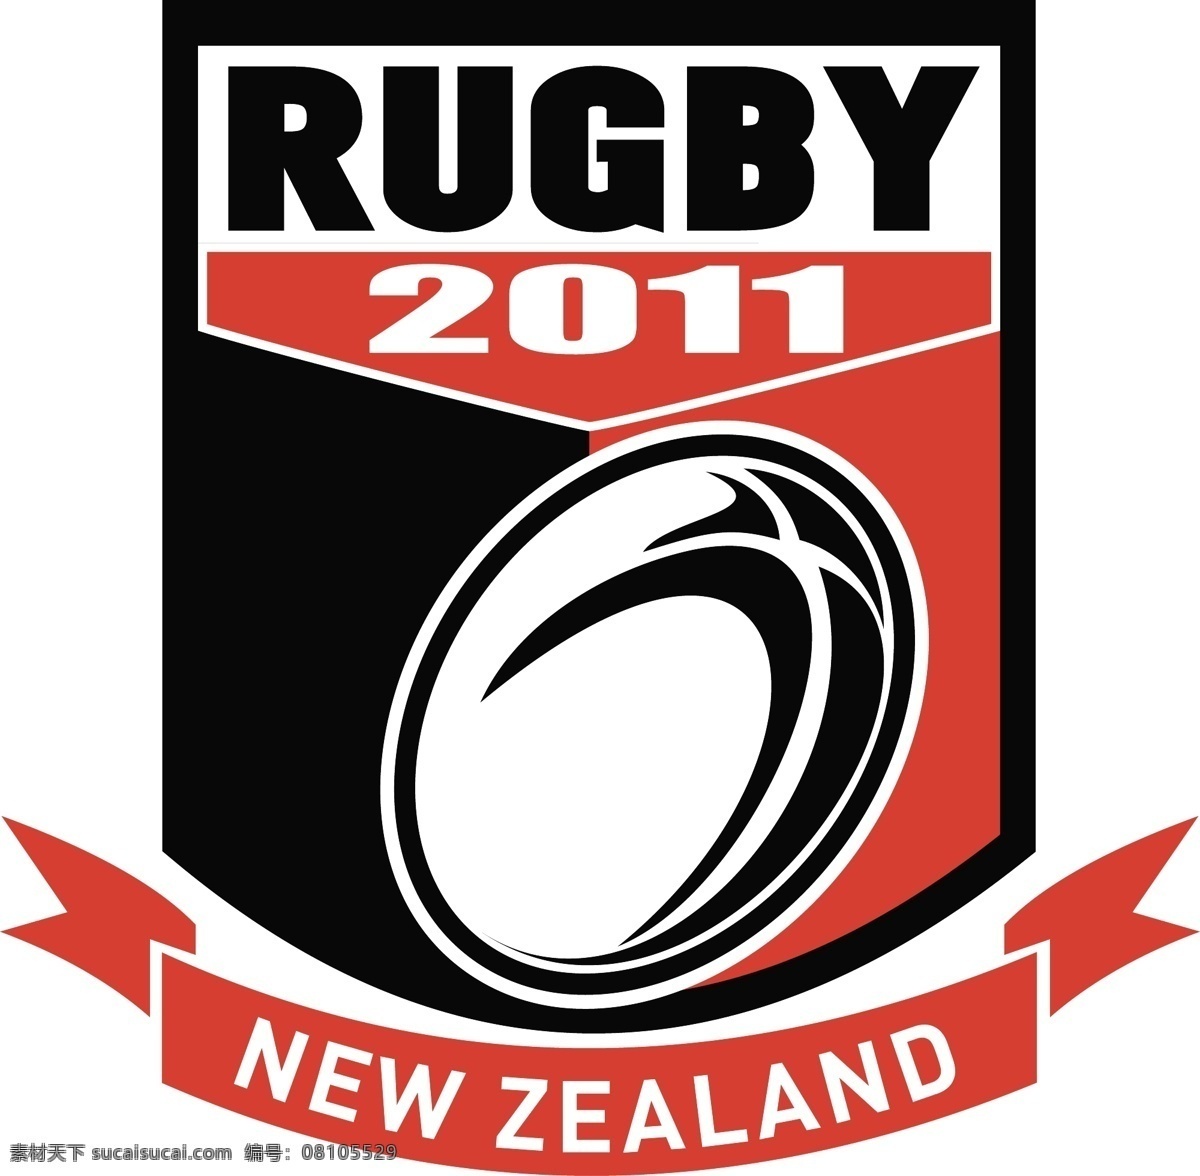 新西兰 橄榄球 2011 盾 矢量图 其他矢量图